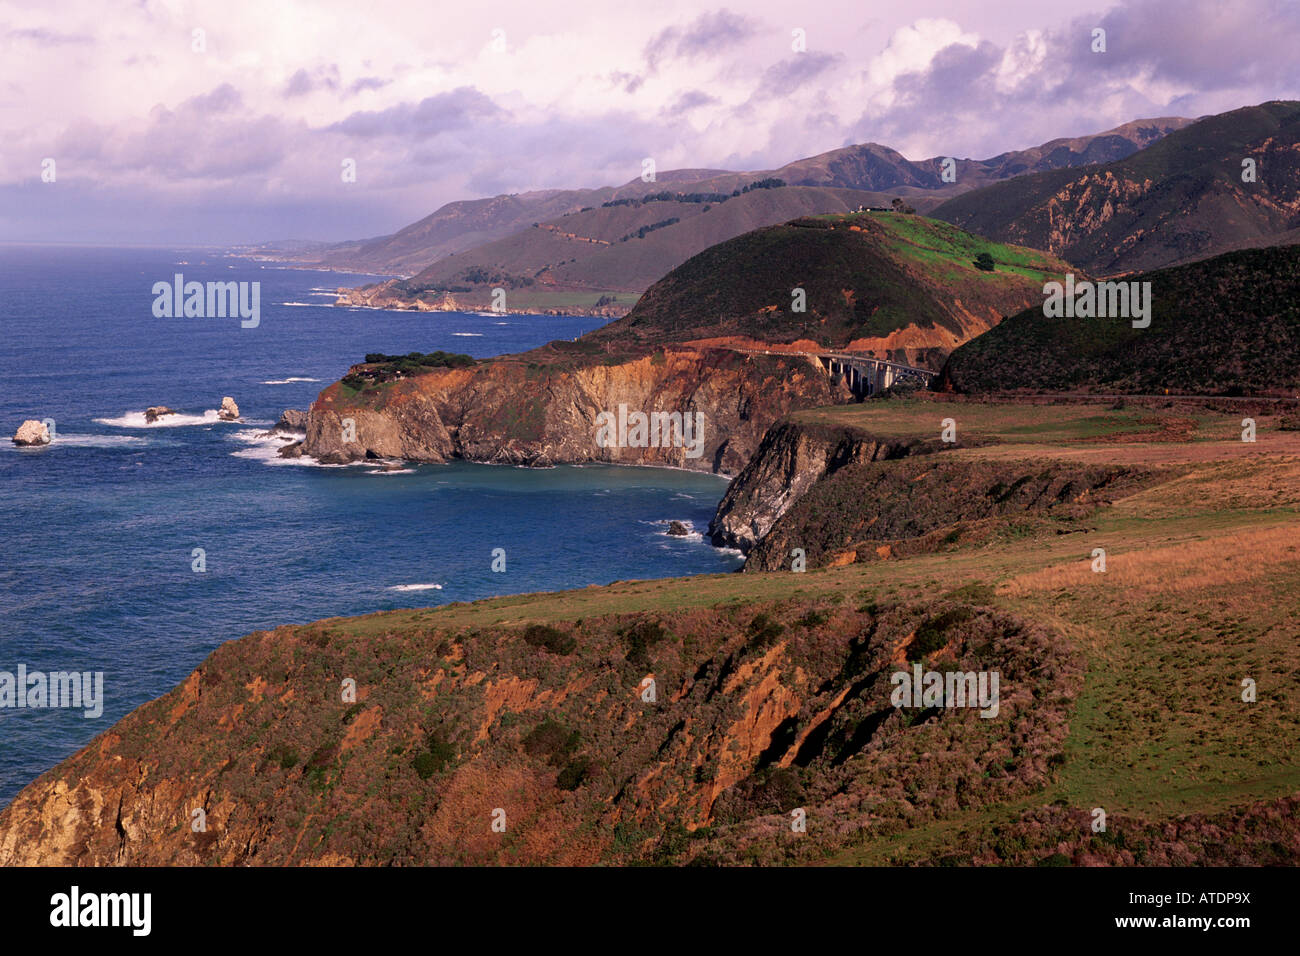 La côte de Big Sur en Californie, est connue pour ses paysages pittoresques robuste Banque D'Images